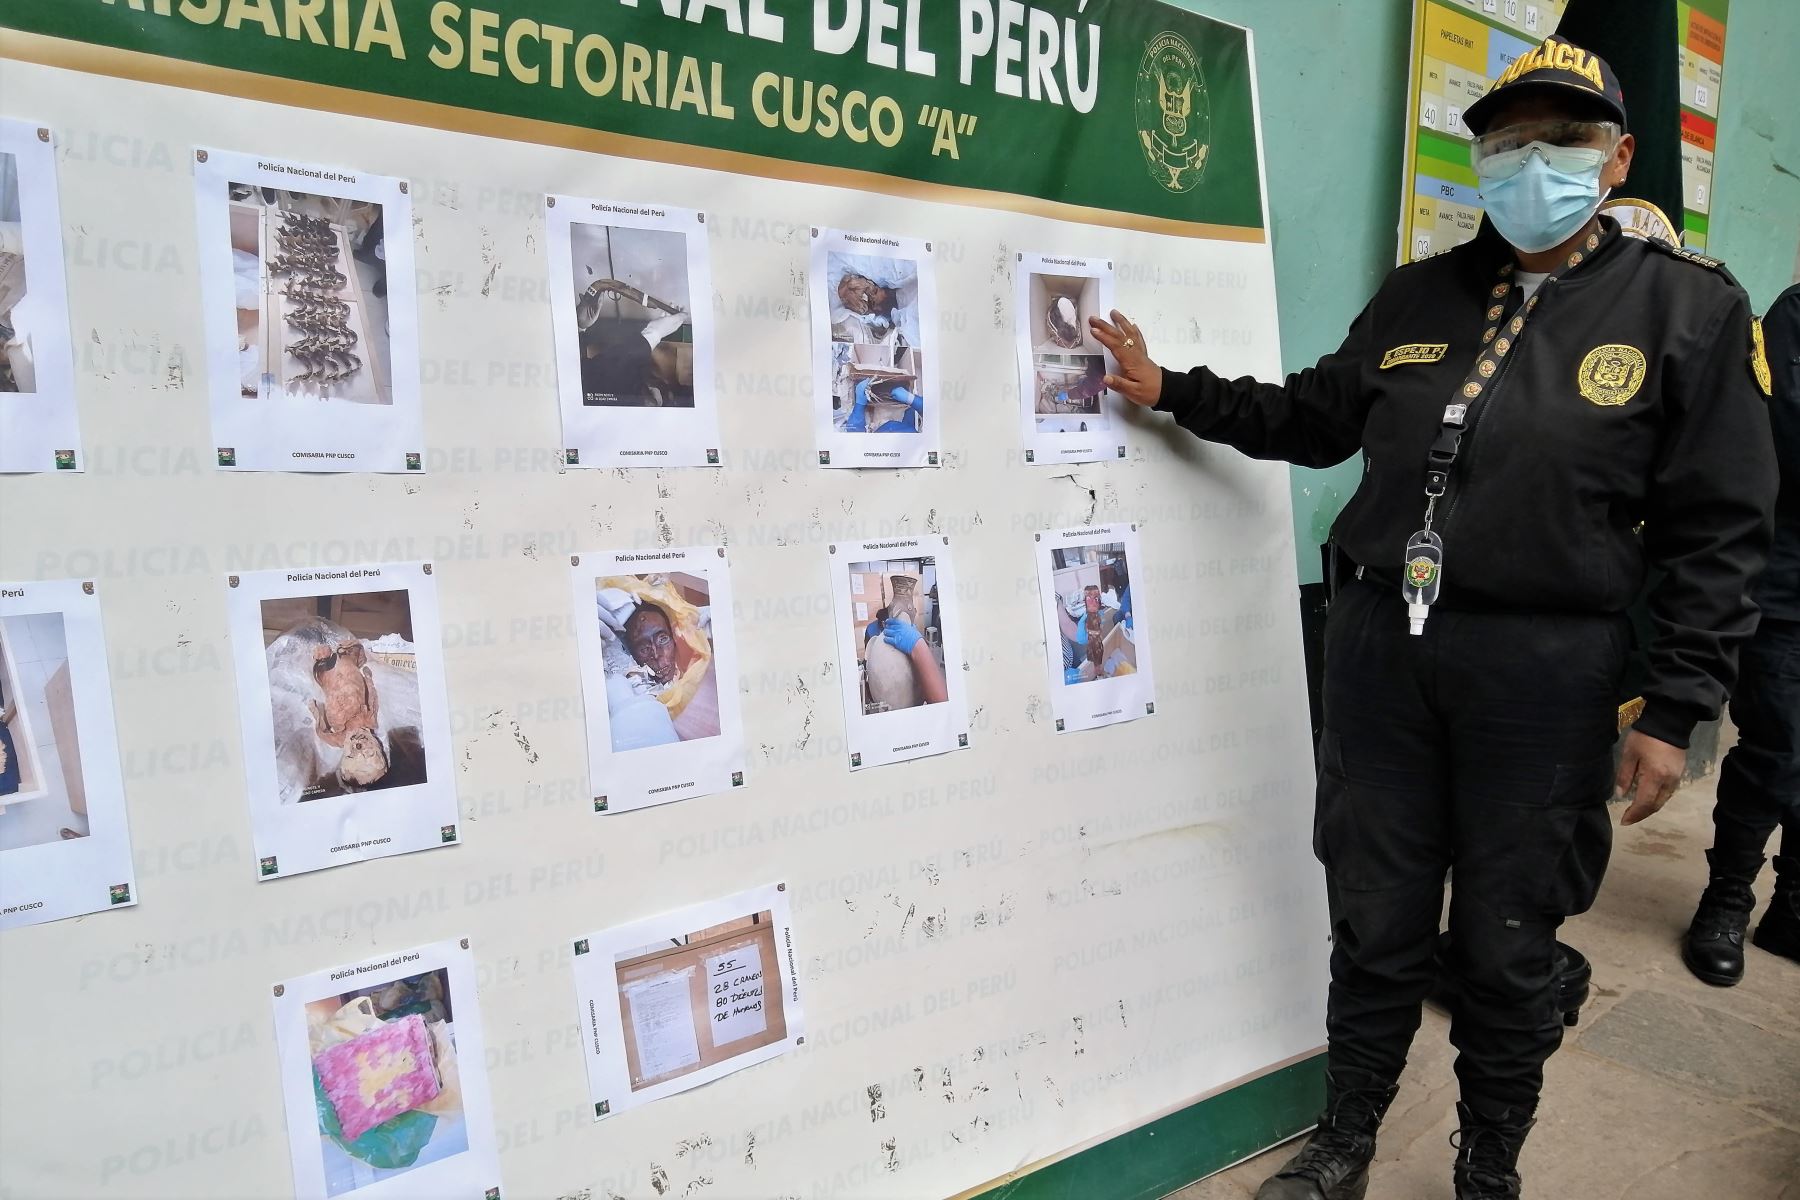 Policía capturó a una persona y recuperó bienes culturales prehispánicos en la ciudad del Cusco. Foto: ANDINA/Difusión